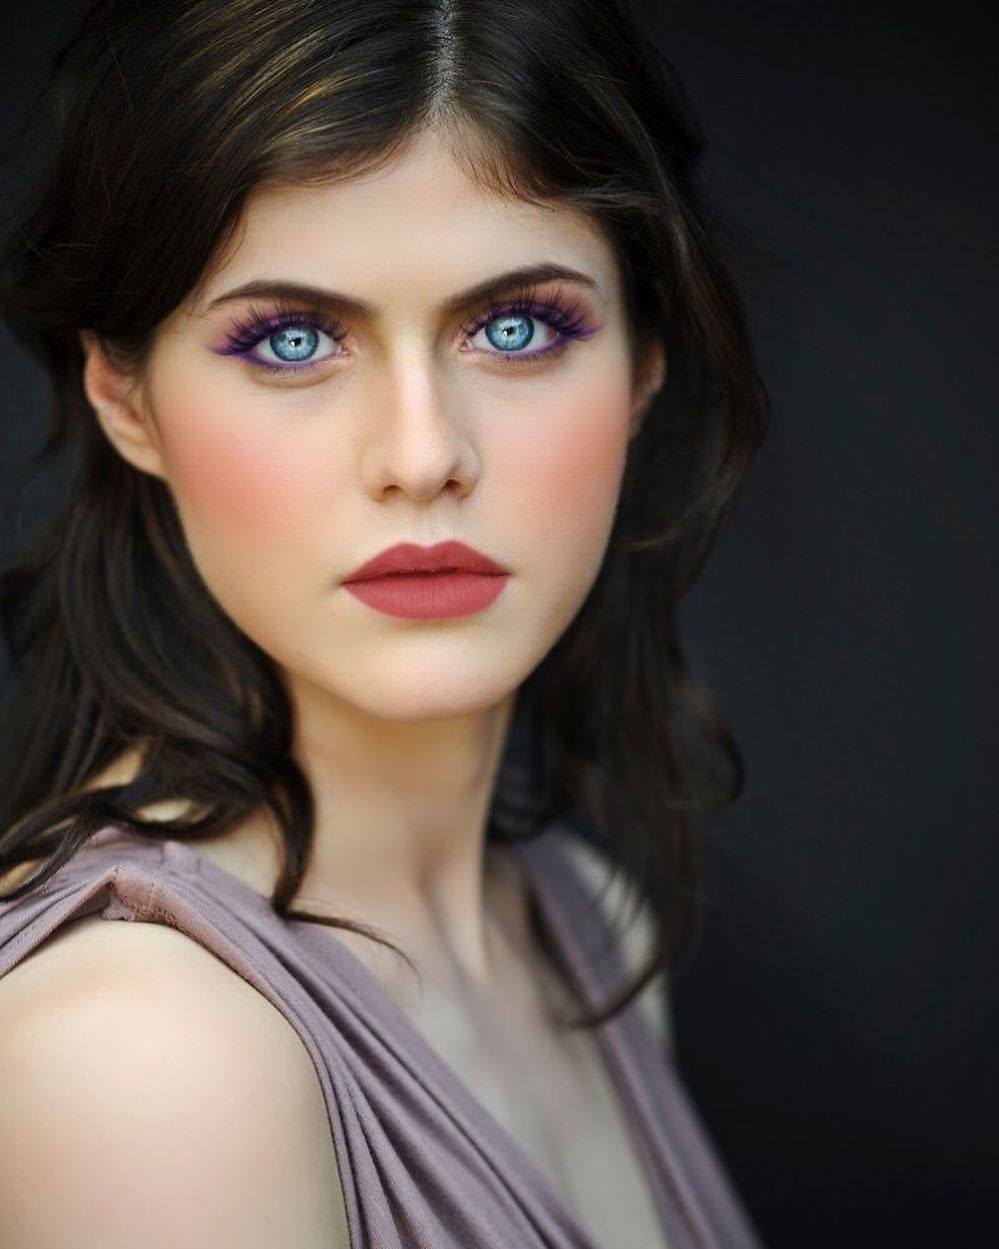 Alexandra Daddario nổi tiếng với đôi mắt đẹp tự nhiên.